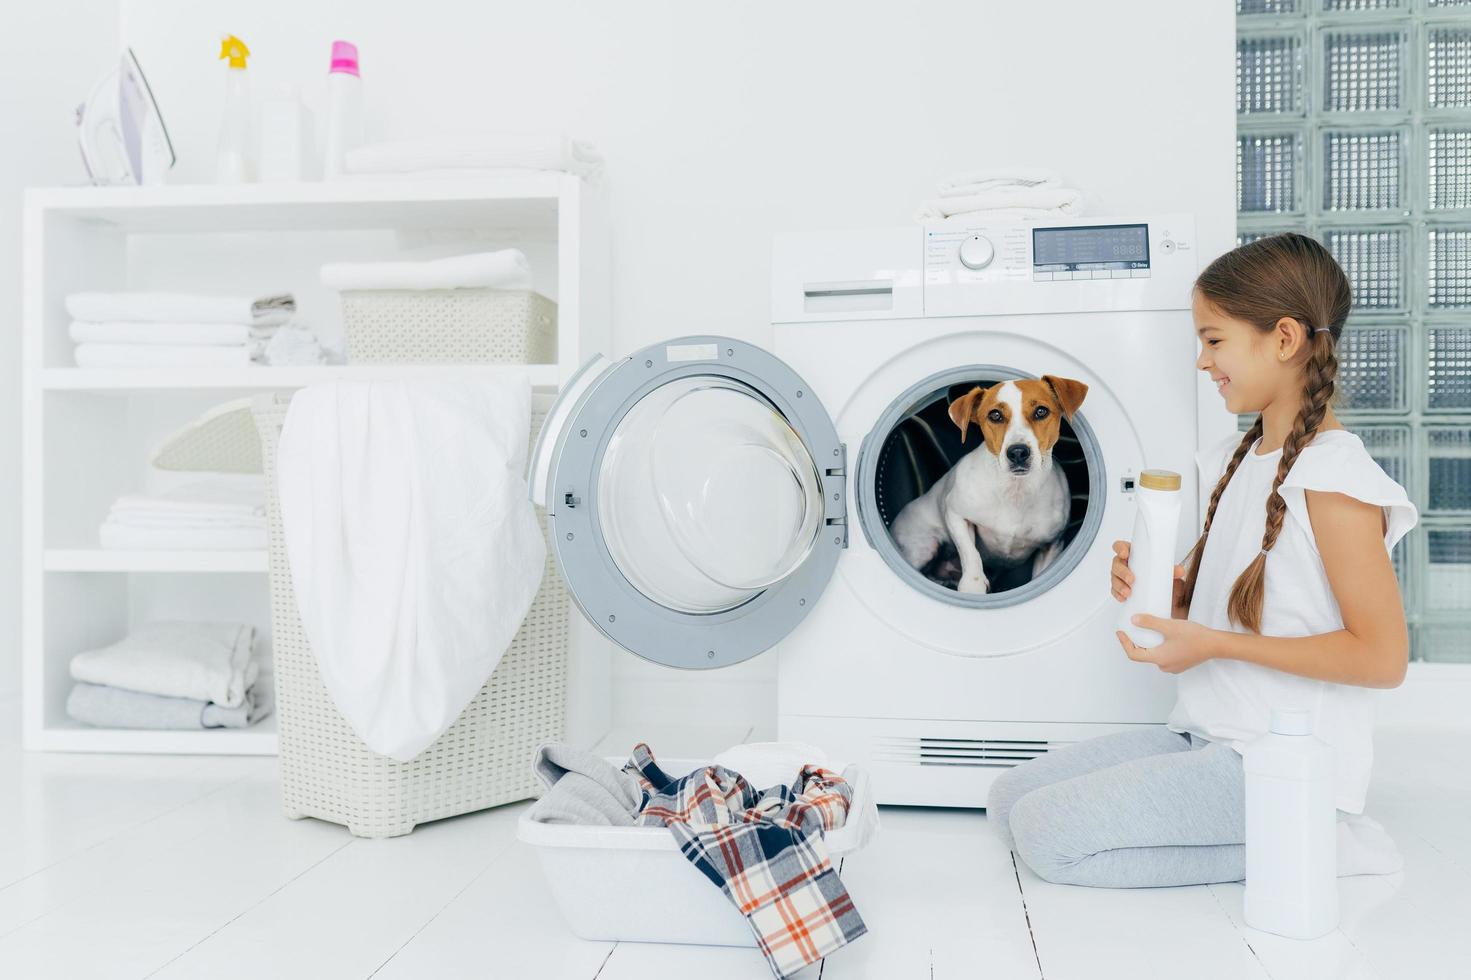 vrolijk meisje staat op knieën met wasmiddel, poseert in de buurt van wasmachine, kijkt vrolijk naar favoriete huisdier in de wasmachine, gaat thuis de was doen, brengt vrije tijd door met hond foto